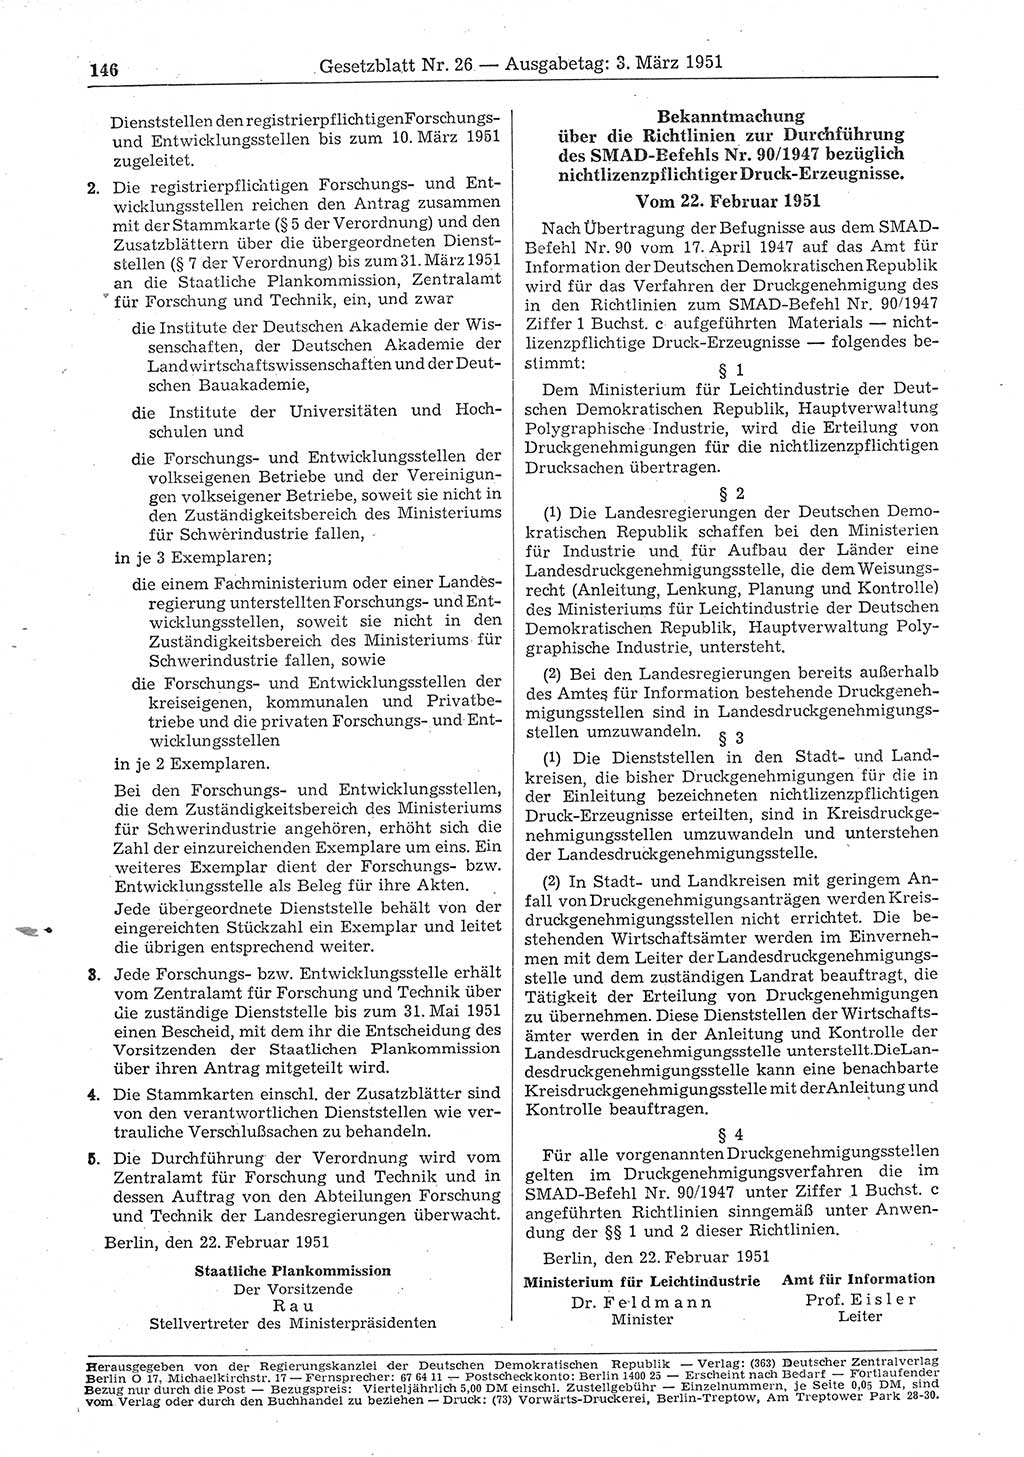 Gesetzblatt (GBl.) der Deutschen Demokratischen Republik (DDR) 1951, Seite 146 (GBl. DDR 1951, S. 146)